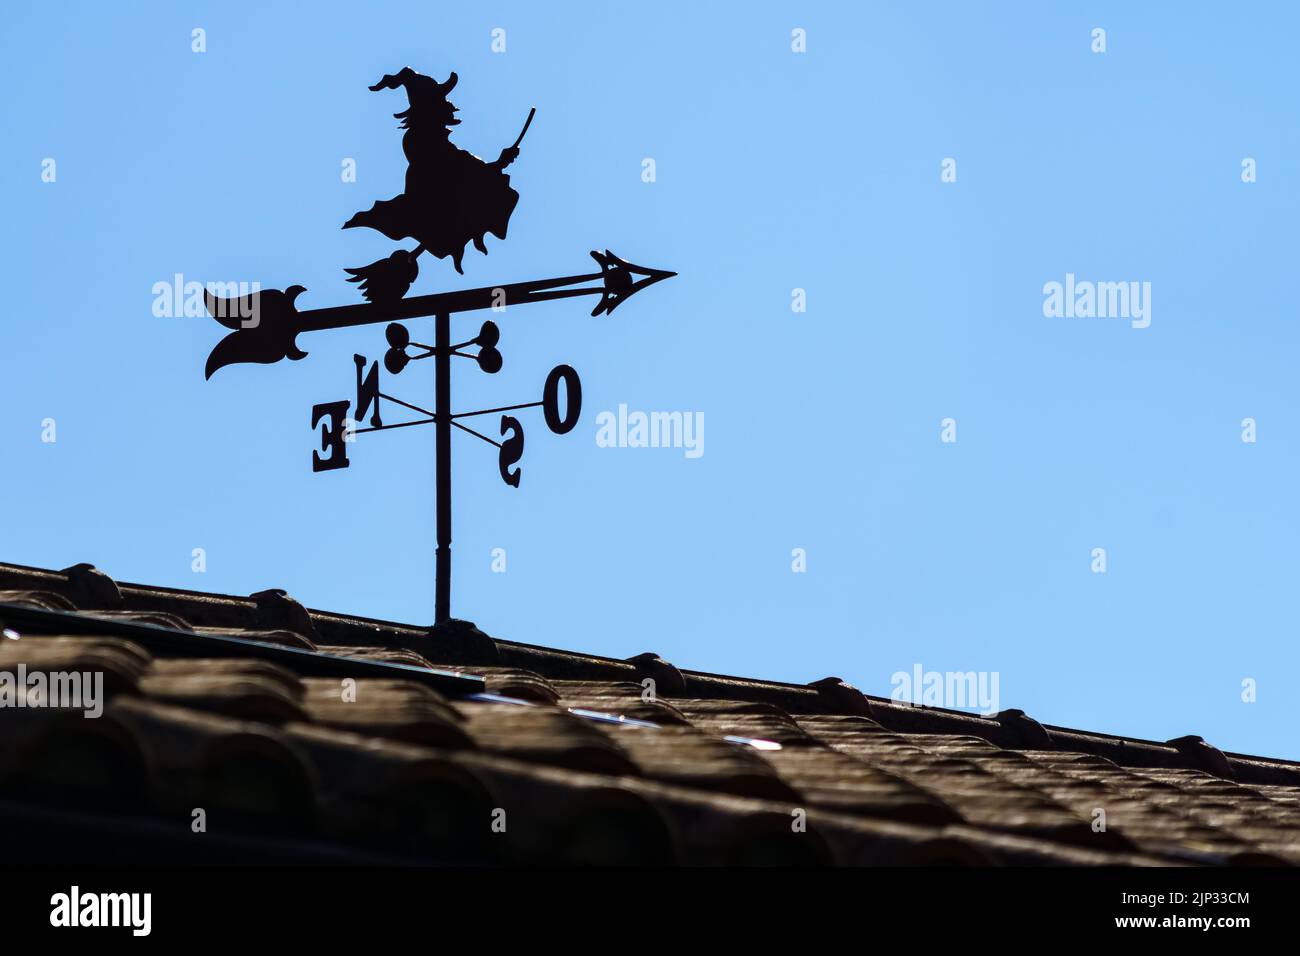 Flügel auf dem Dach des Hauses im Freien mit Hexe und Pfeil, die Richtung des Windes zeigen. Spanien. Wettervane. Stockfoto